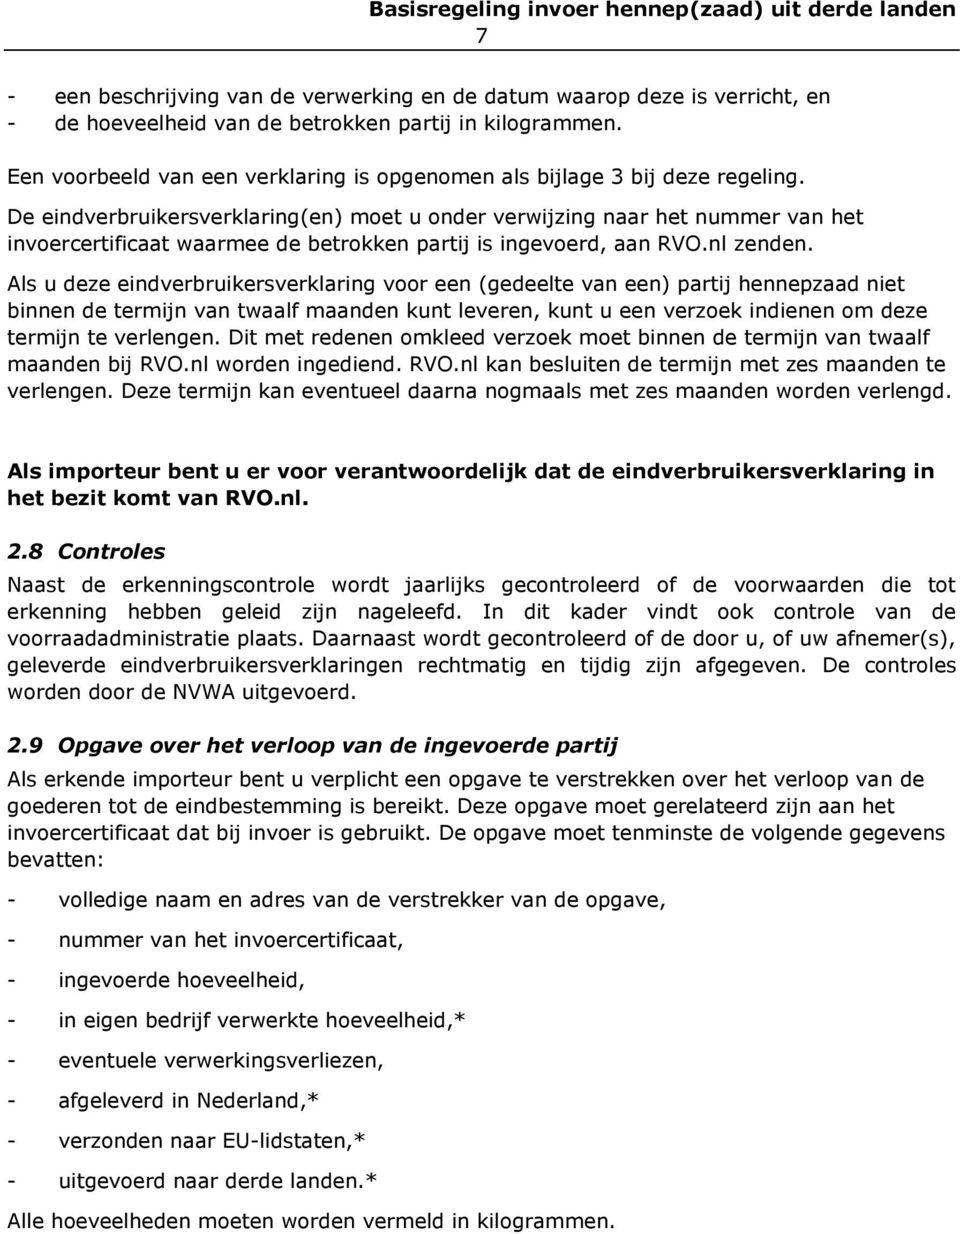 De eindverbruikersverklaring(en) moet u onder verwijzing naar het nummer van het invoercertificaat waarmee de betrokken partij is ingevoerd, aan RVO.nl zenden.